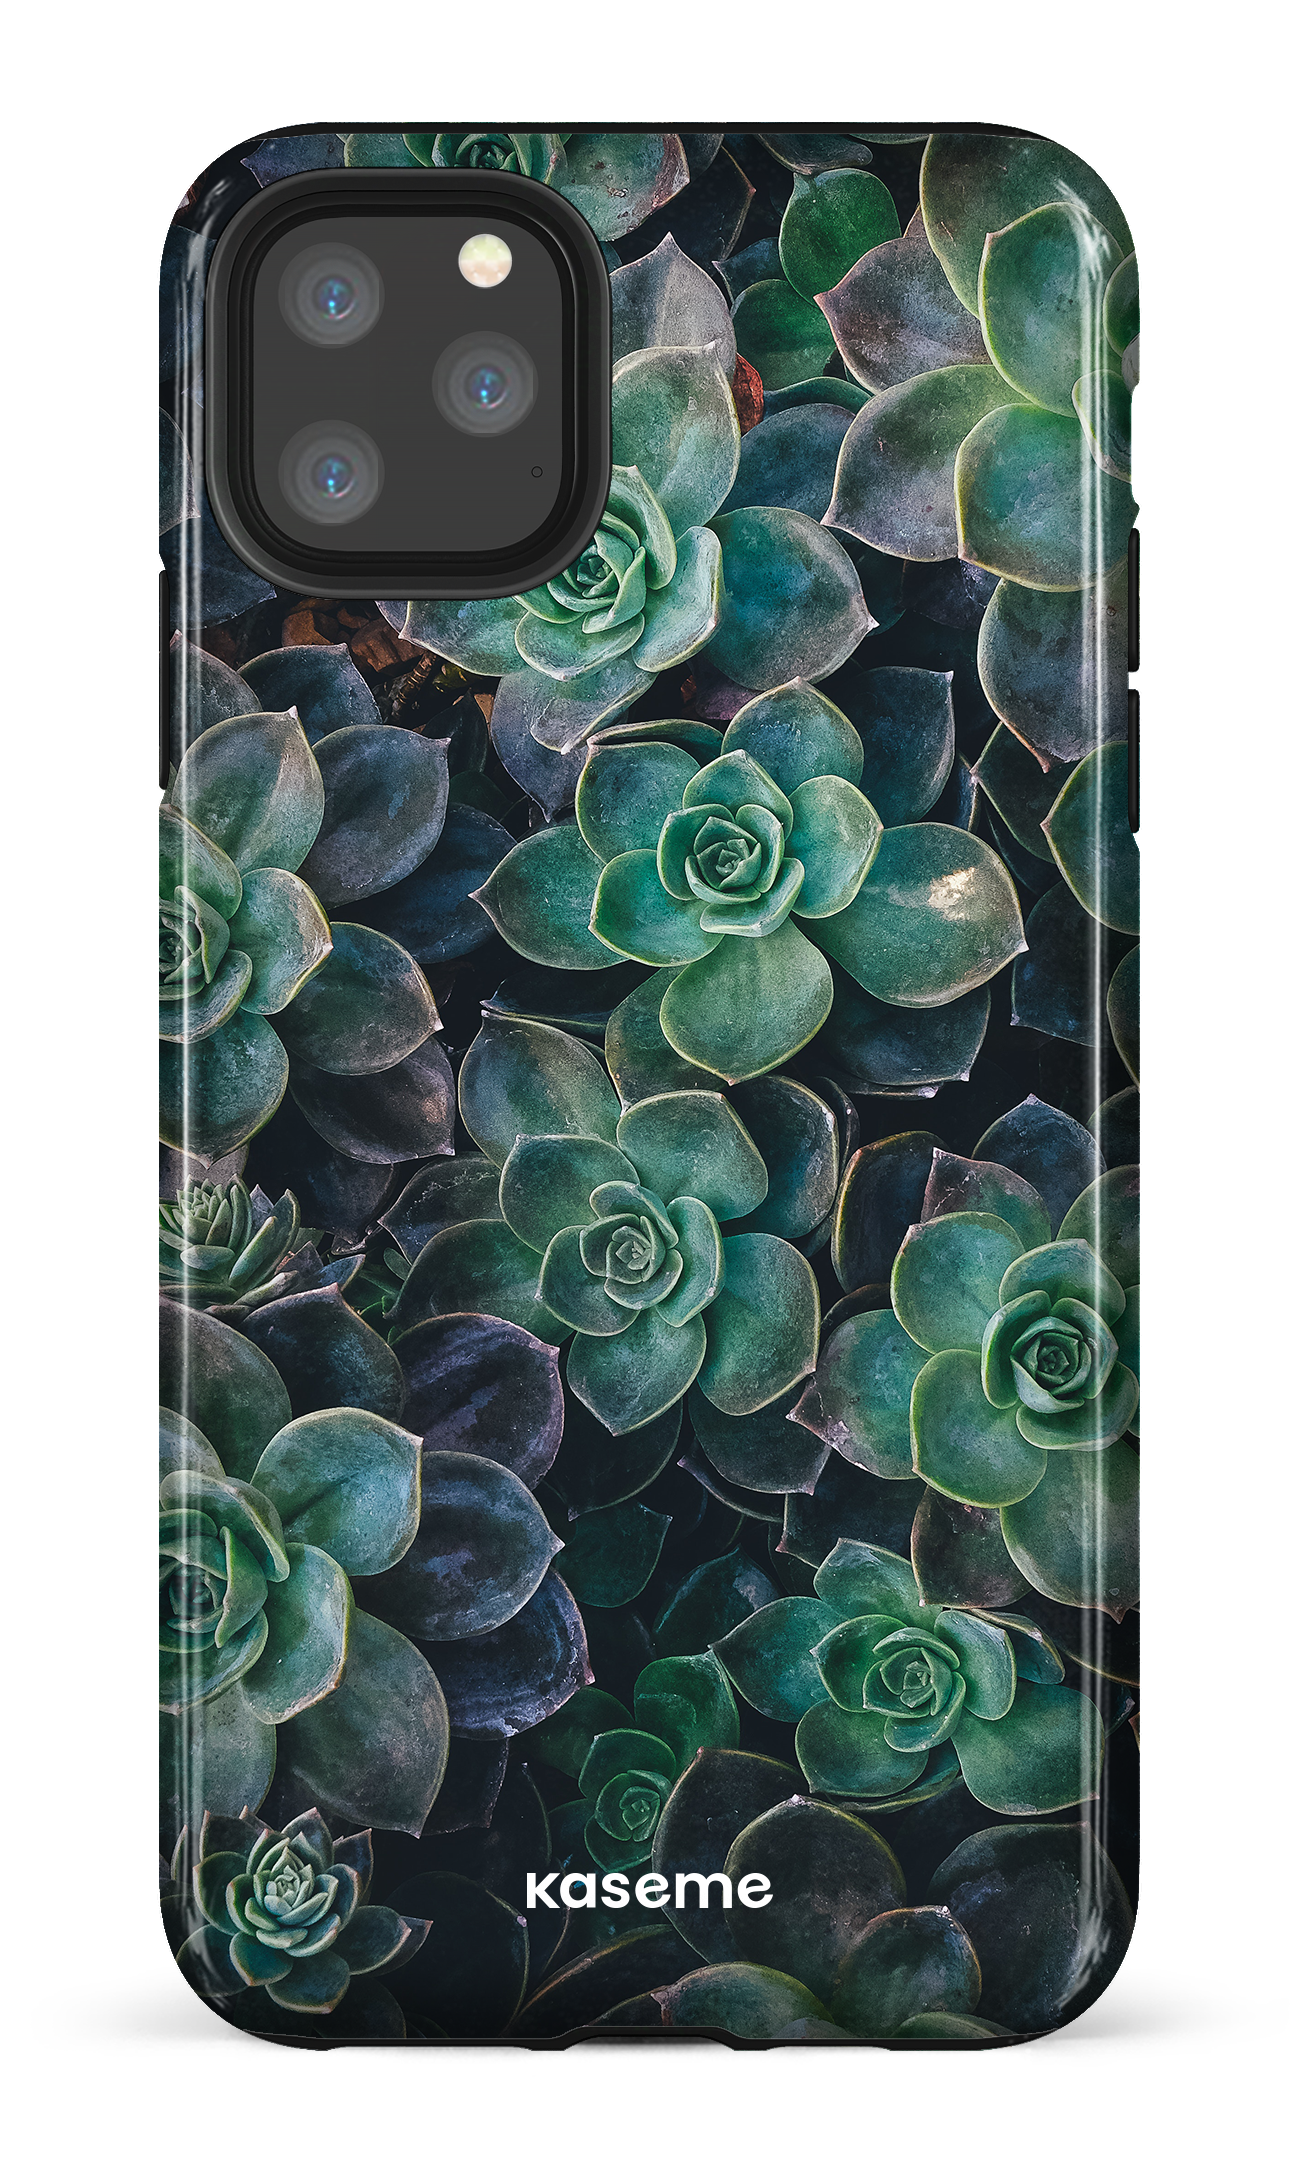 Succulente - iPhone 11 Pro Max